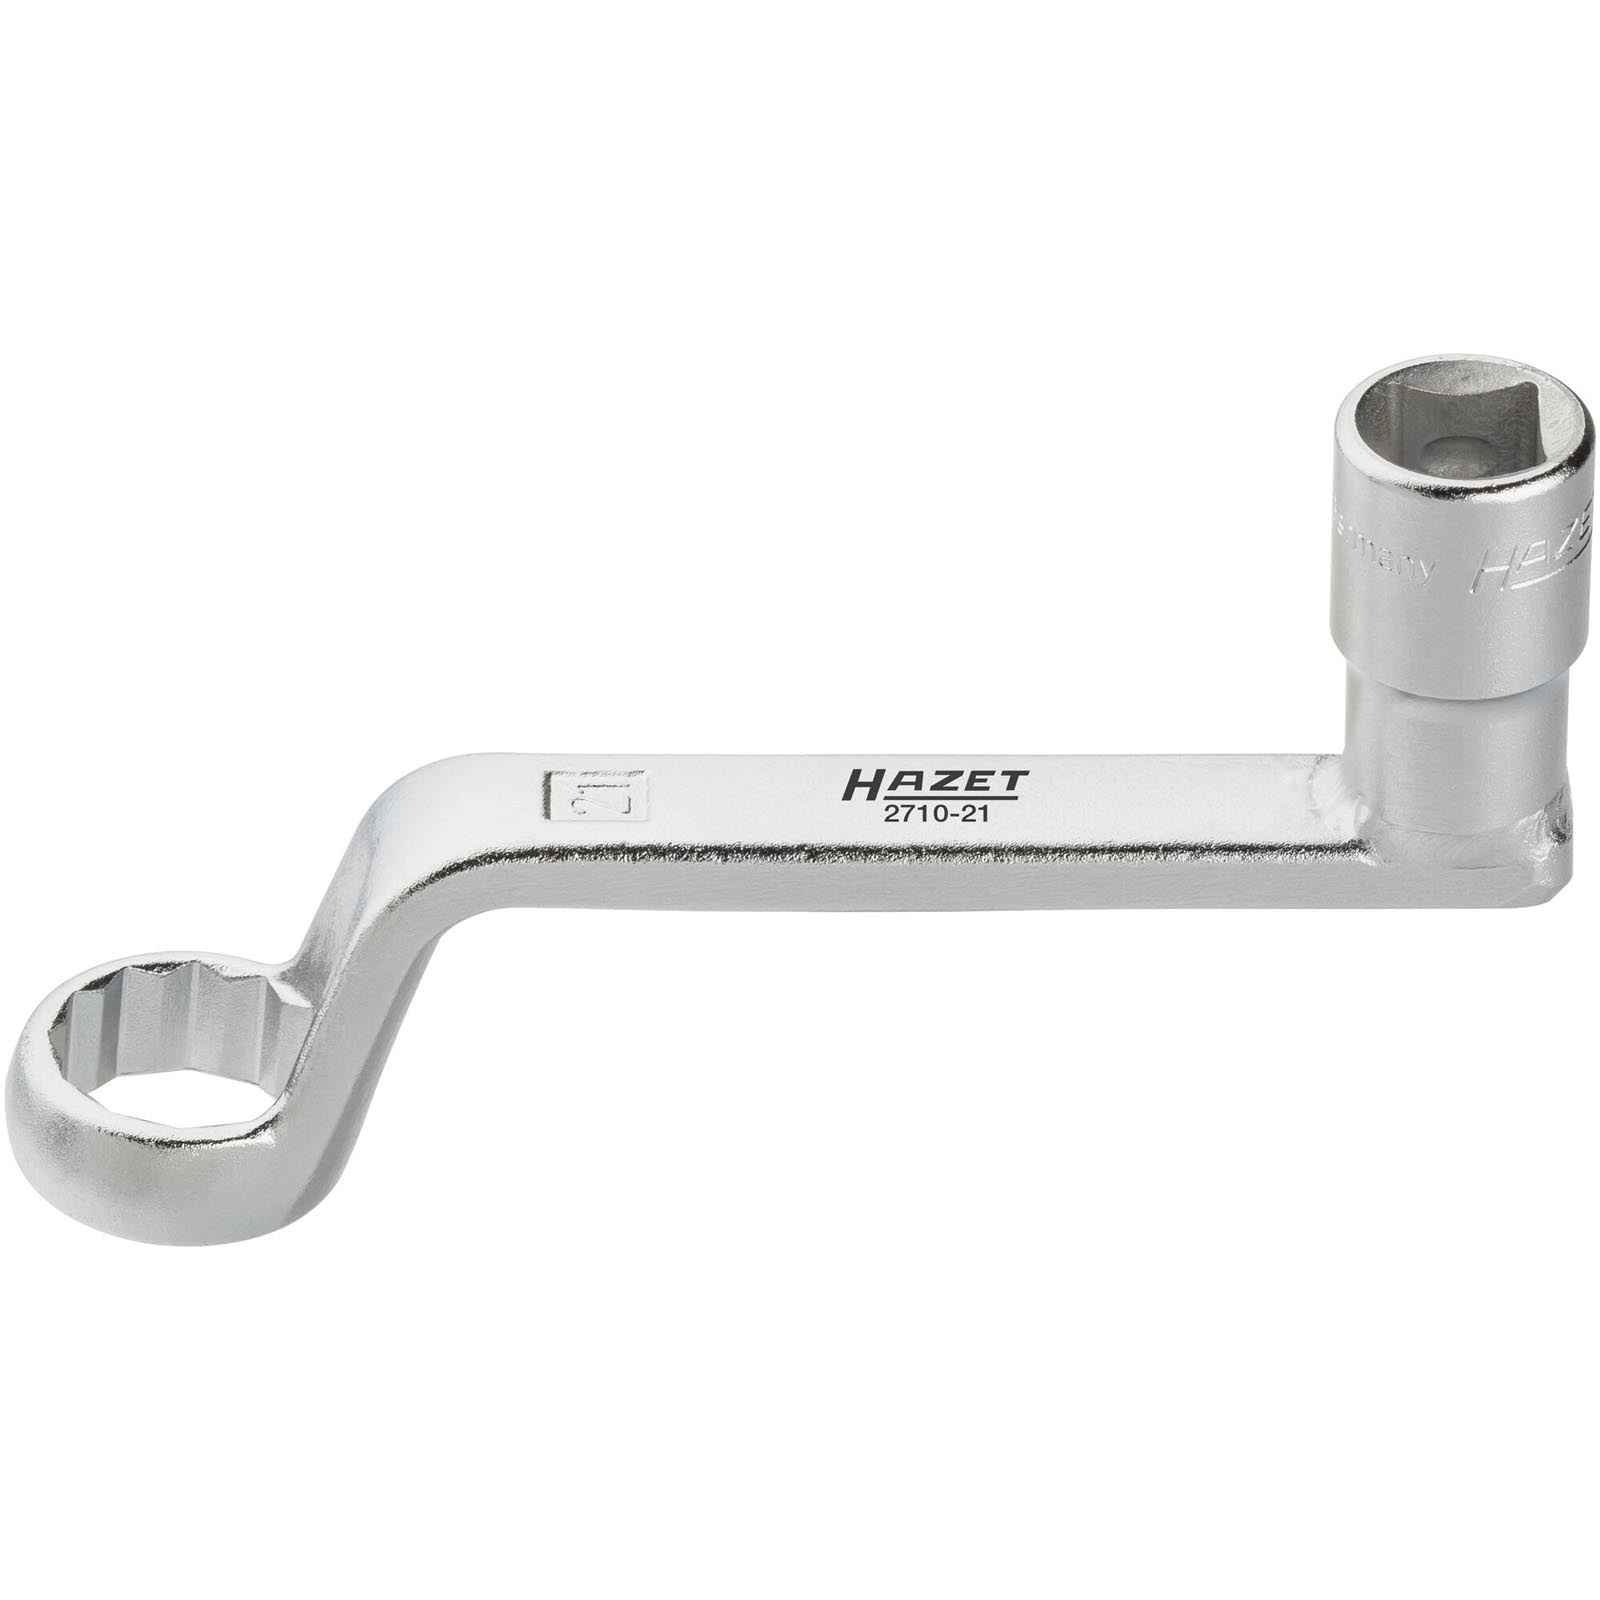 HAZET Alignment Tools, caster/camber adjustment